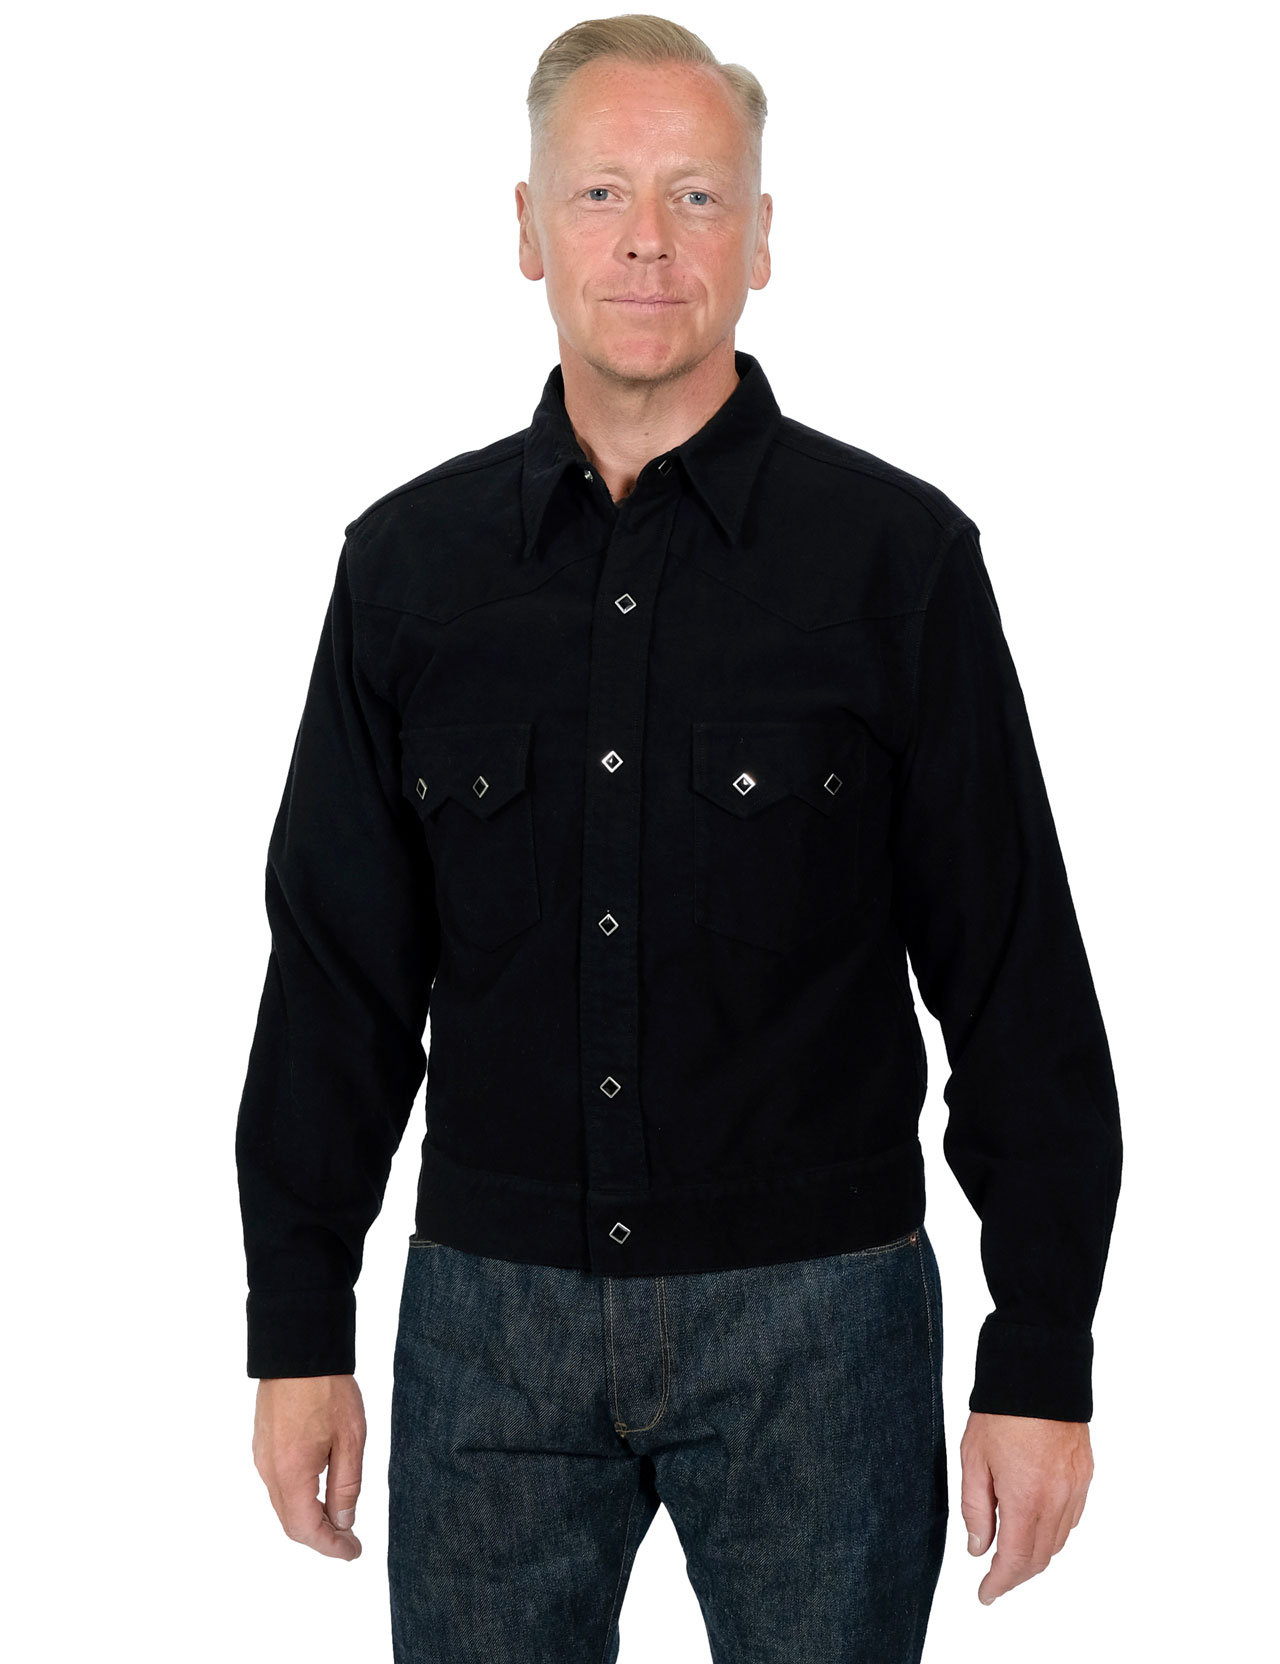 Stevenson Overall Co. - Cassidy Moleskin Shirt - Black